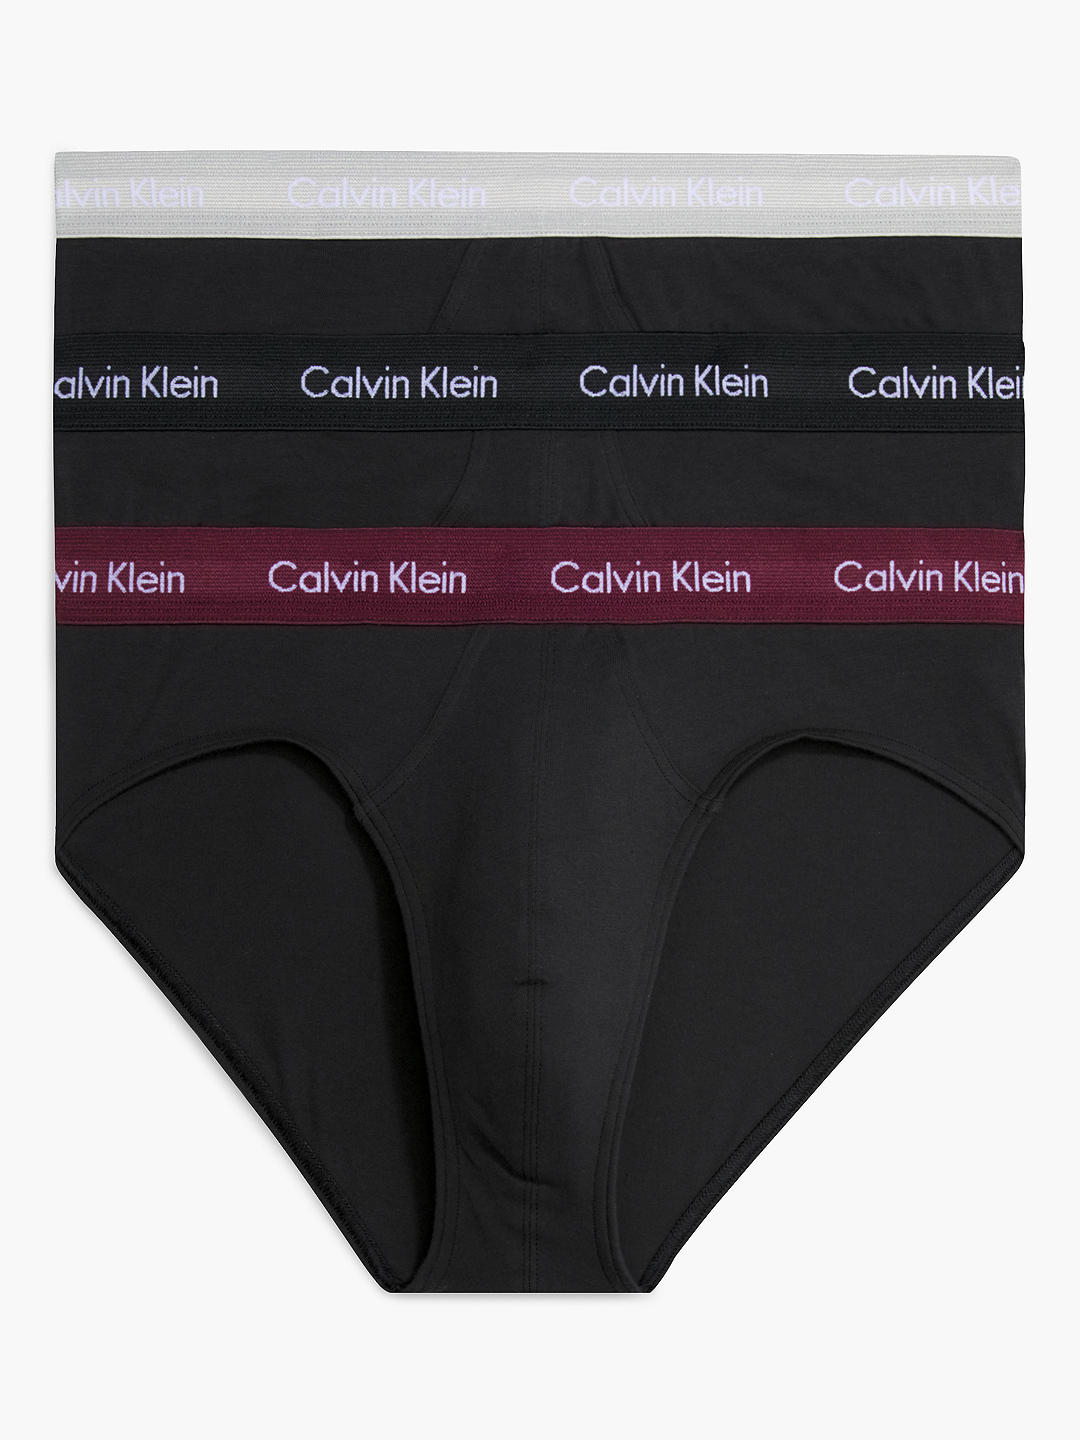 Calvin Klein Underwear Cotton Briefs, Pack of 3, Black/Port/Porpoise